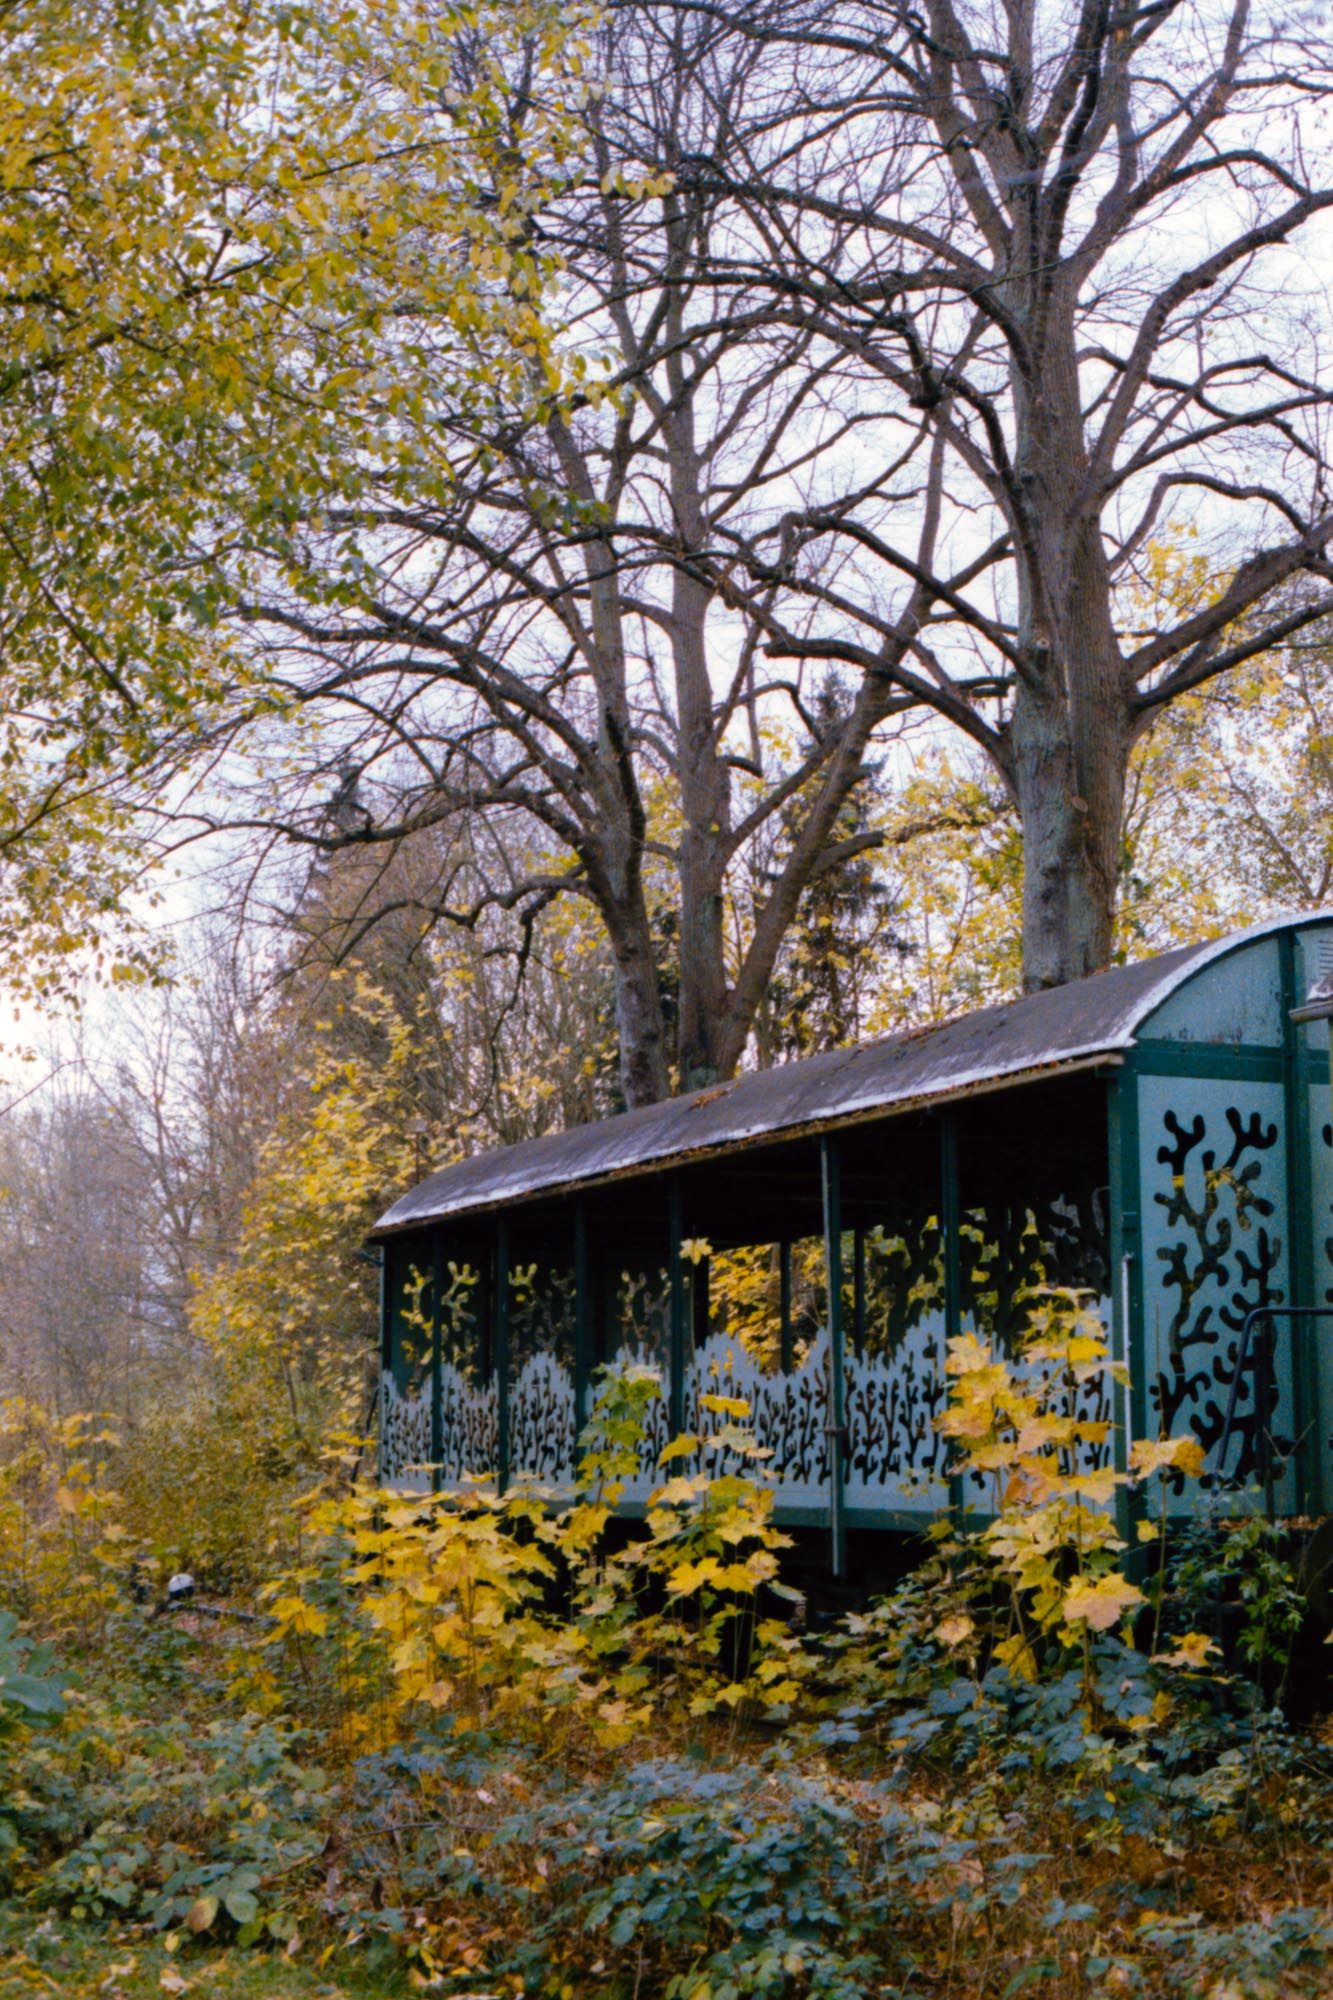 Verfallender Eisenbahnwaggon, umgeben von bunten Herbstbäumen.